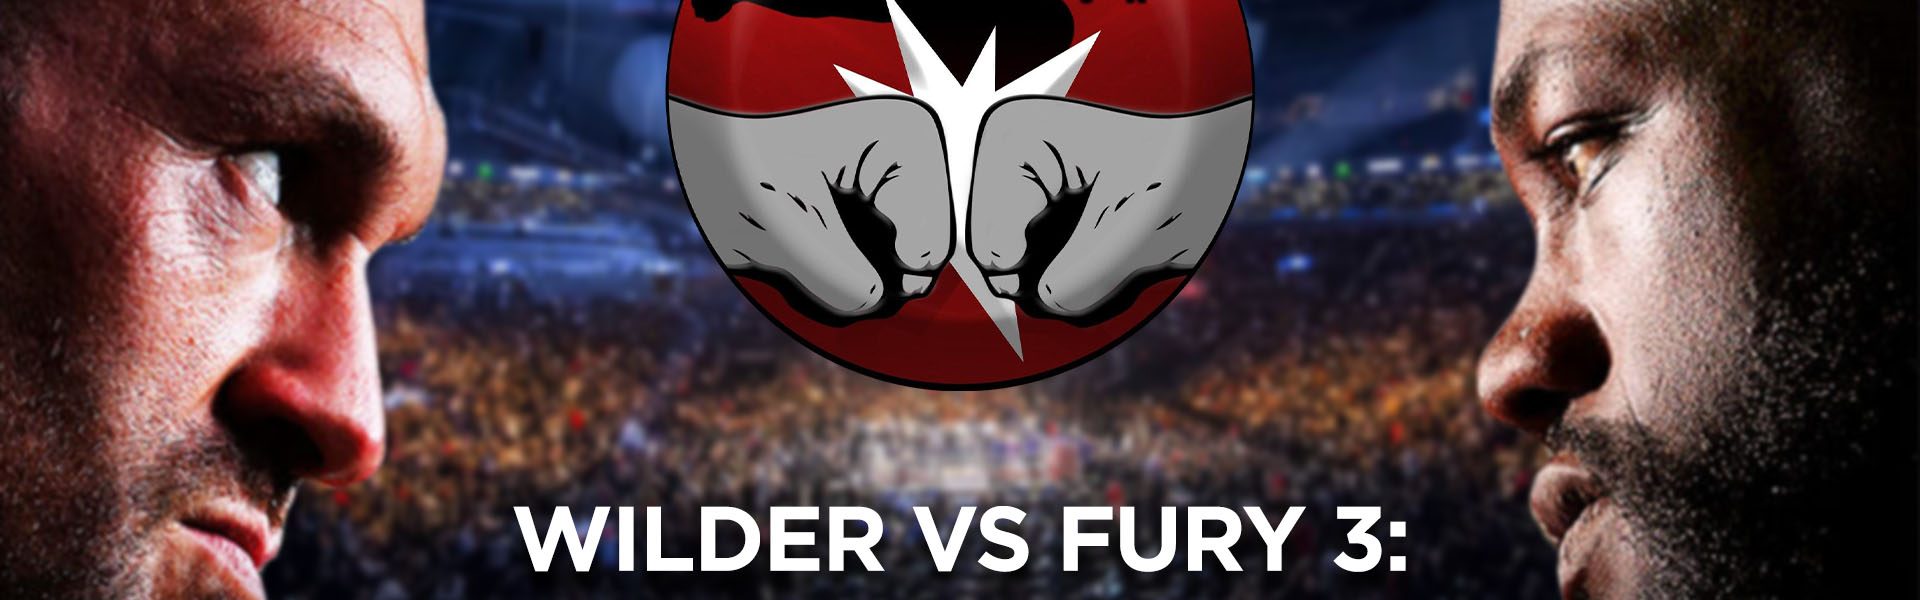 Wilder vs Fury 3: l'analisi del match con Niccolò Pavesi - The Real FIGHT Talk Show Ep. 60